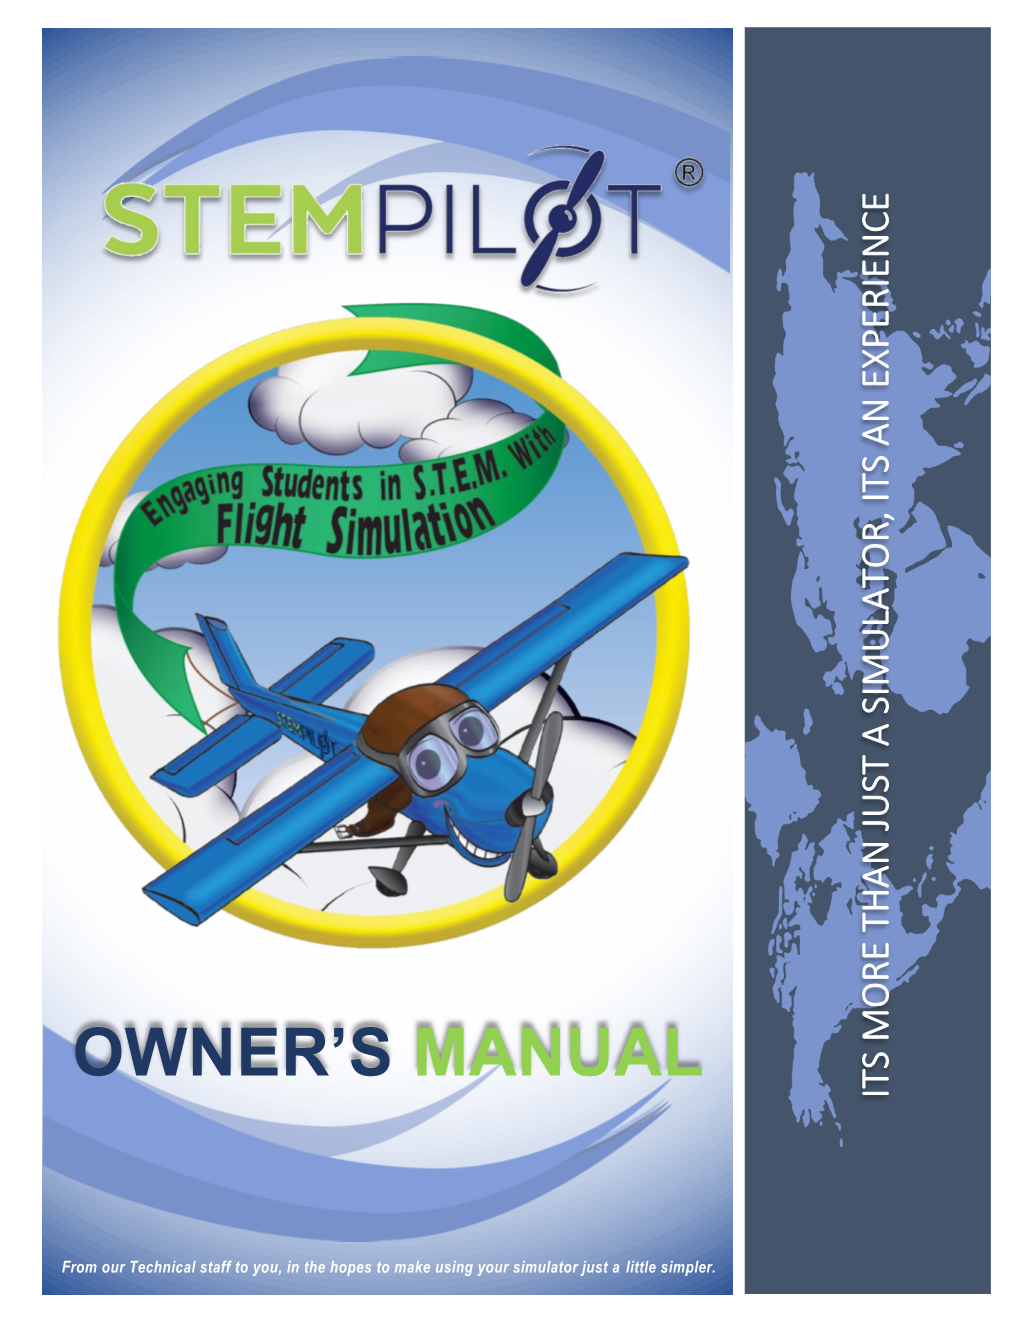 Stempilot Owner's Manual